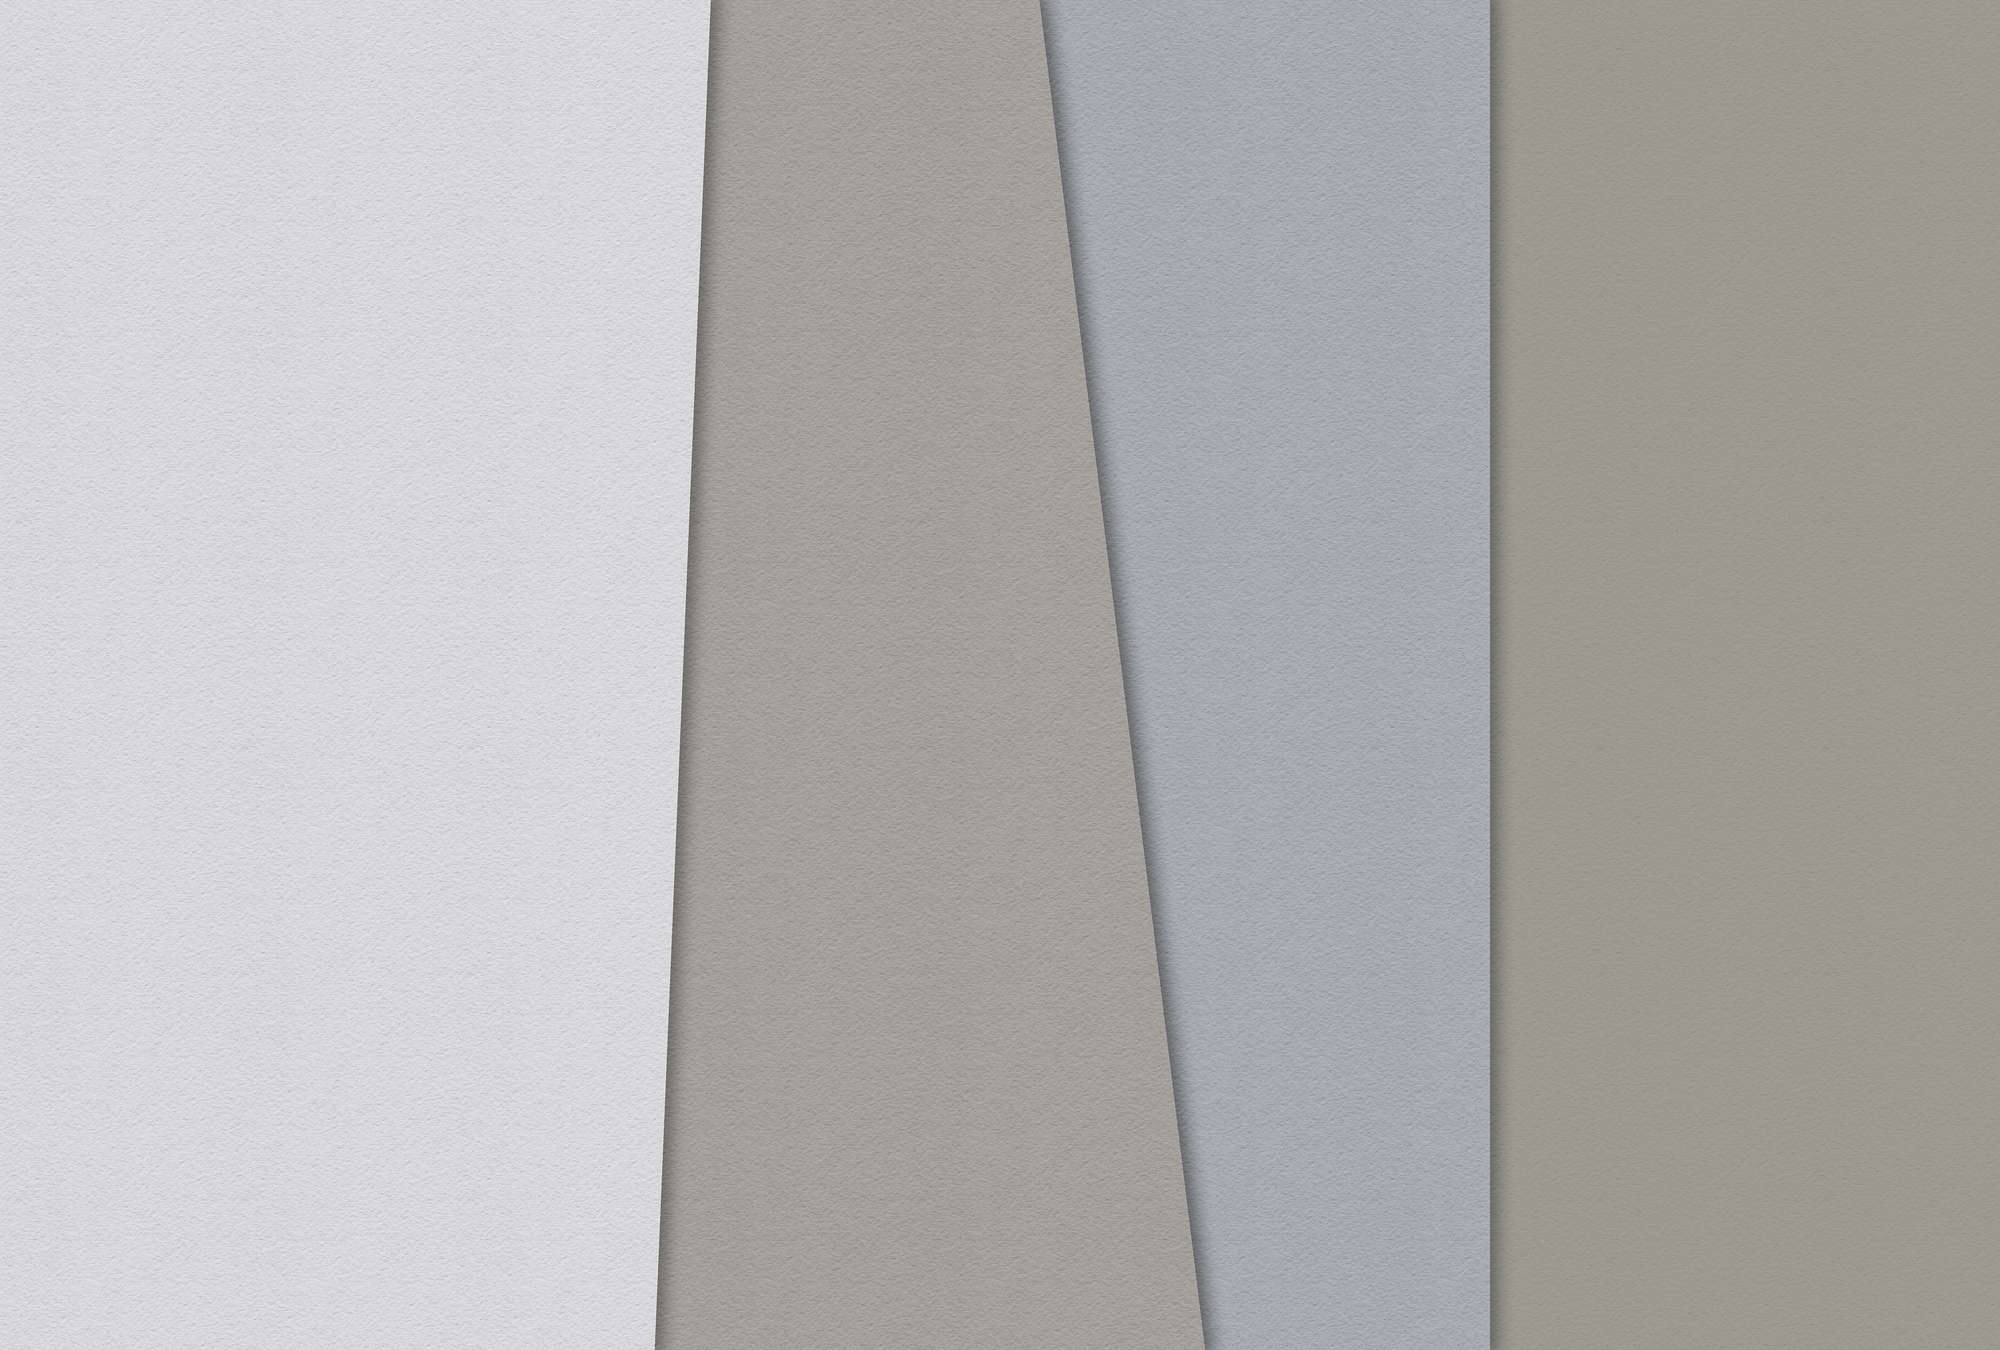             Layered paper 4 - Fototapete Farbflächen Minimalismus in Büttenpapier Struktur – Blau, Creme | Premium Glattvlies
        